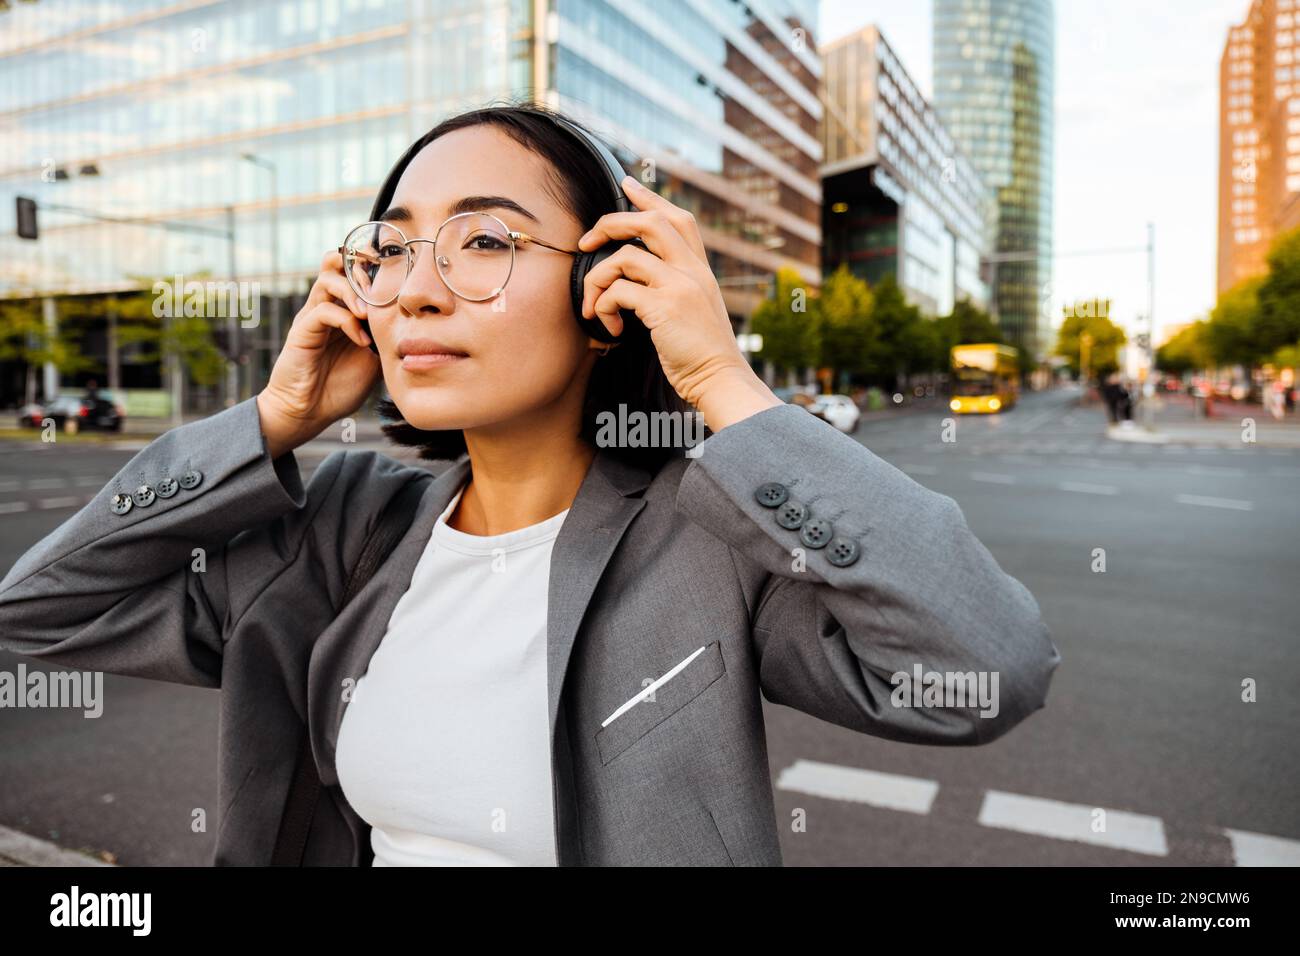 Junge, hübsche asiatische Frau mit Brille, die Kopfhörer aufsetzt, während  sie auf der Straße steht Stockfotografie - Alamy